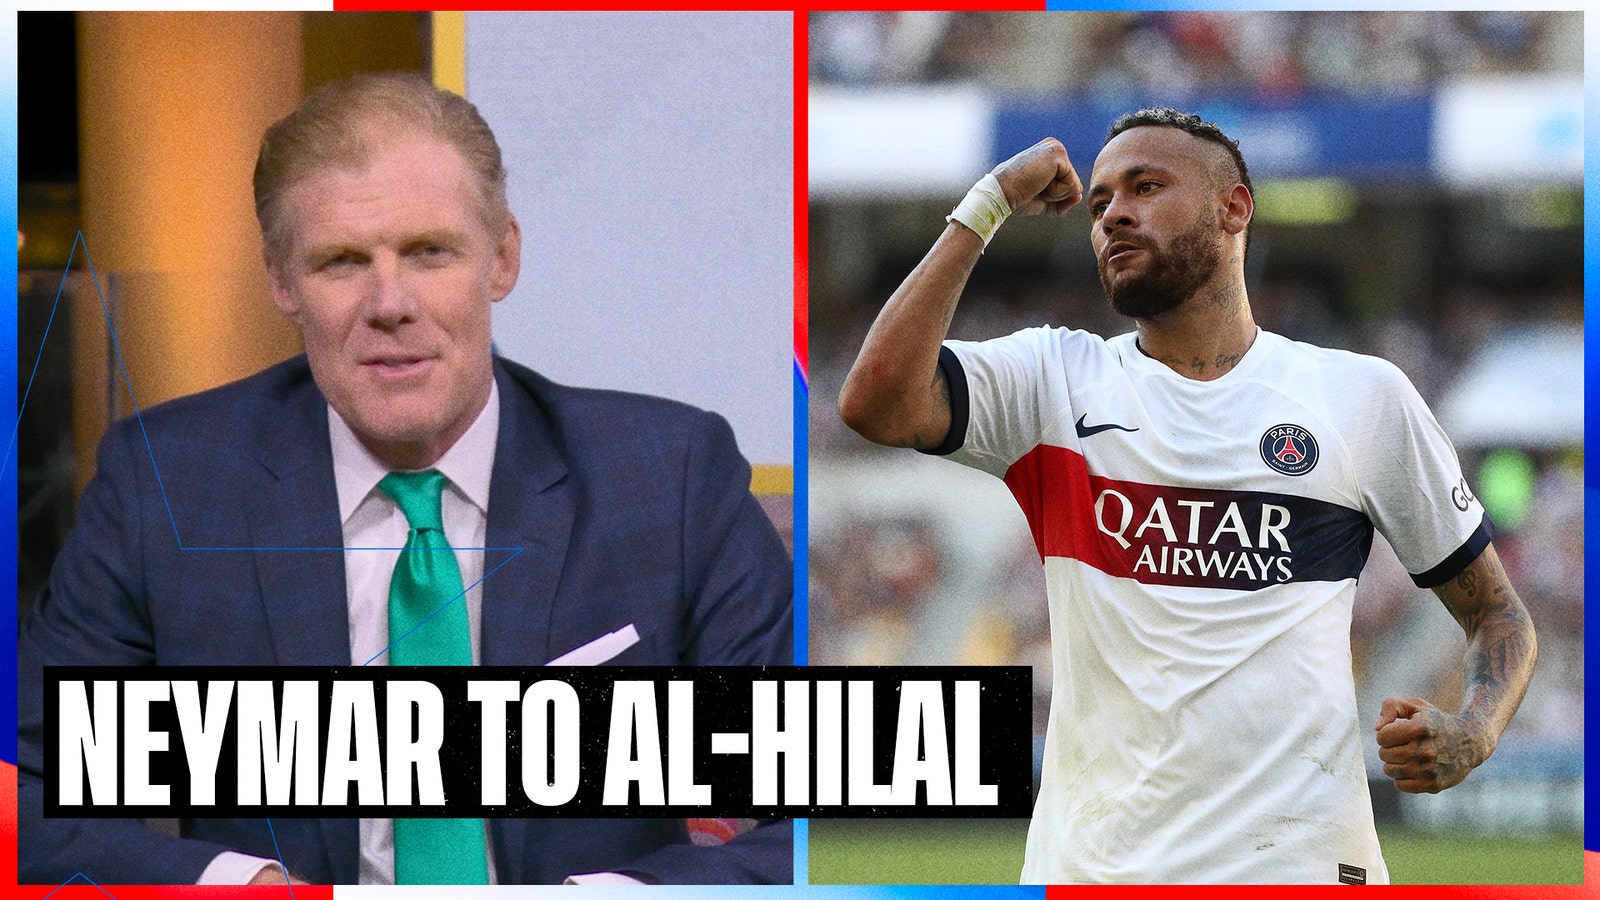 Alexi reacts to Neymar's transfer to Al-Hilal, Saudi Arabia